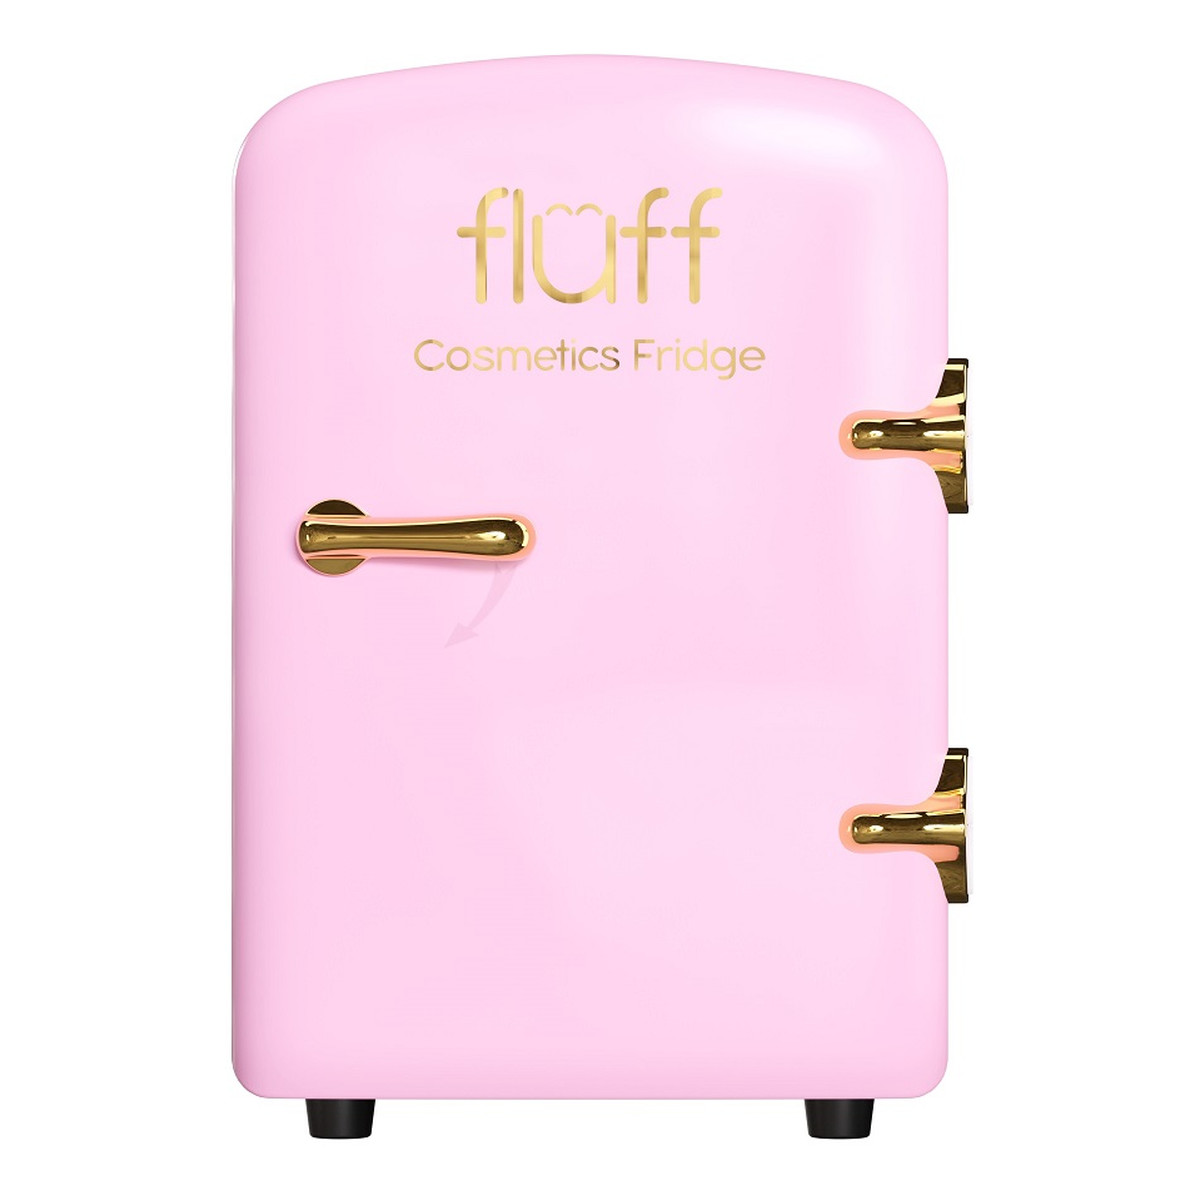 Fluff Cosmetics fridge lodówka kosmetyczna ze złotym logo różowa